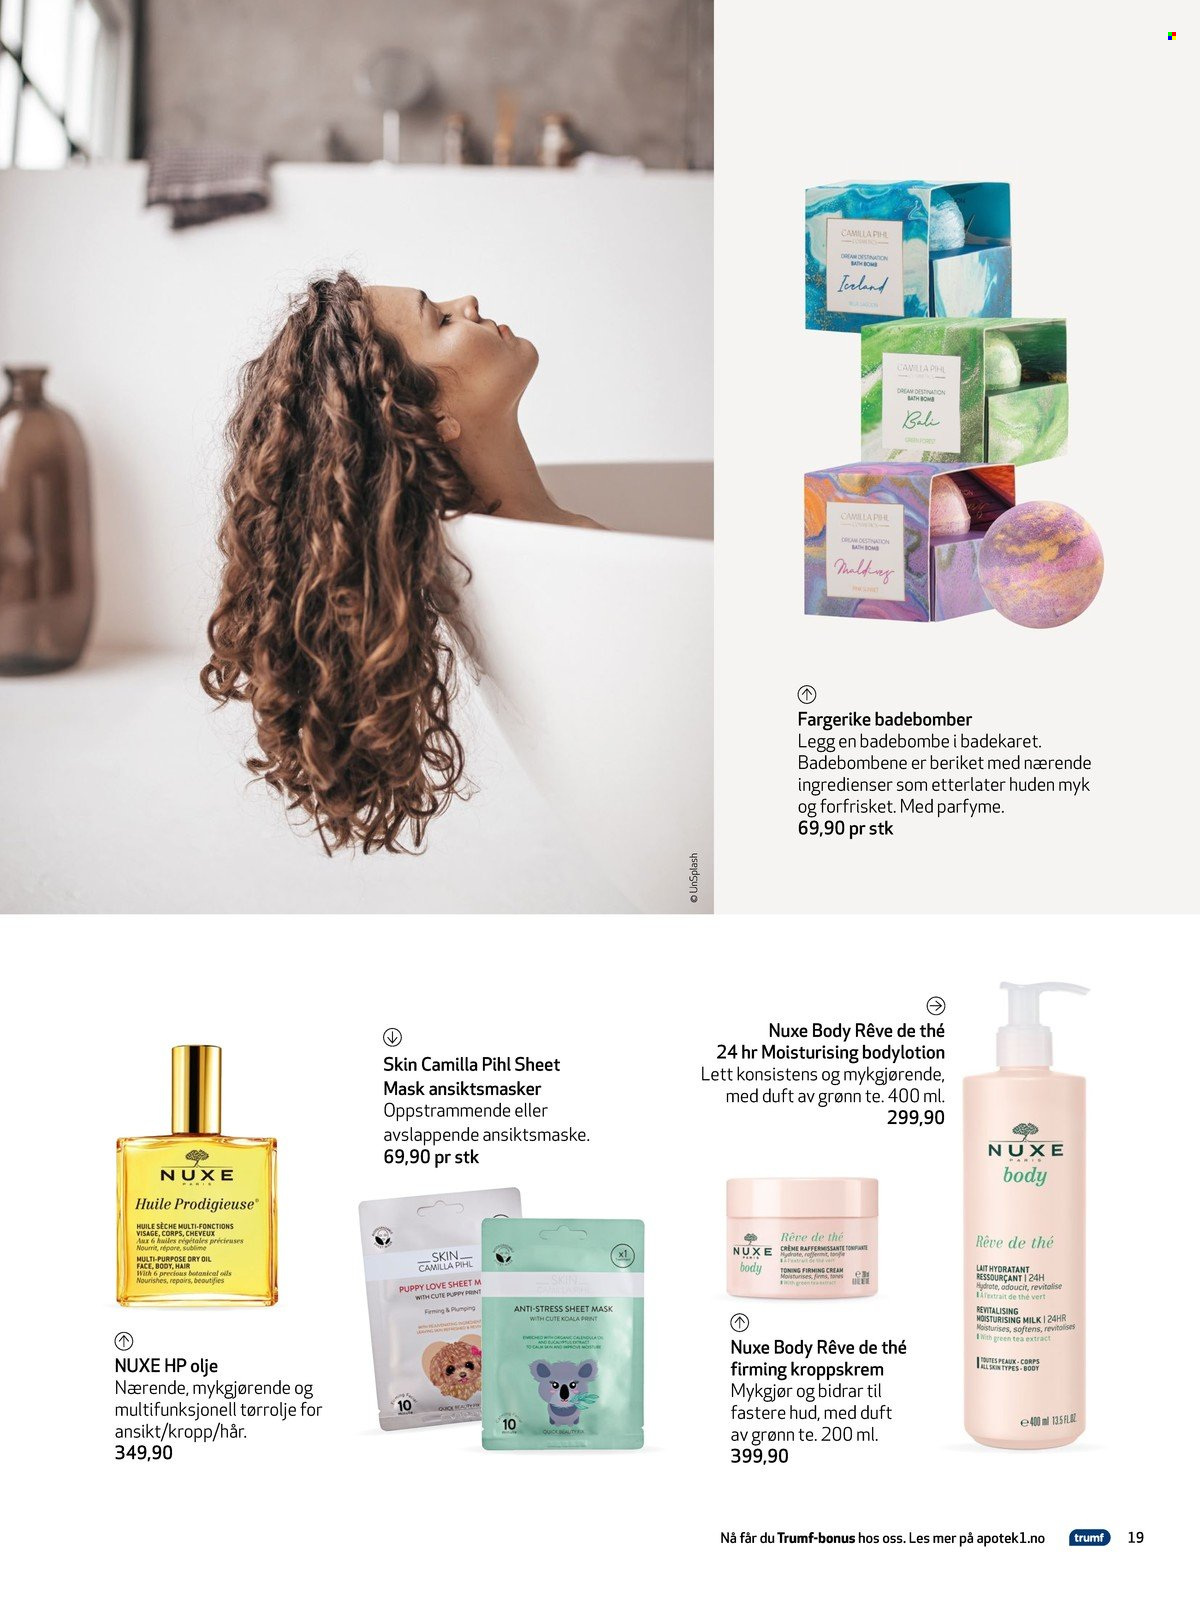 thumbnail - Kundeavis Apotek 1 - Produkter fra tilbudsaviser - mask, tea, cream, ansiktsmaske, body lotion. Side 19.